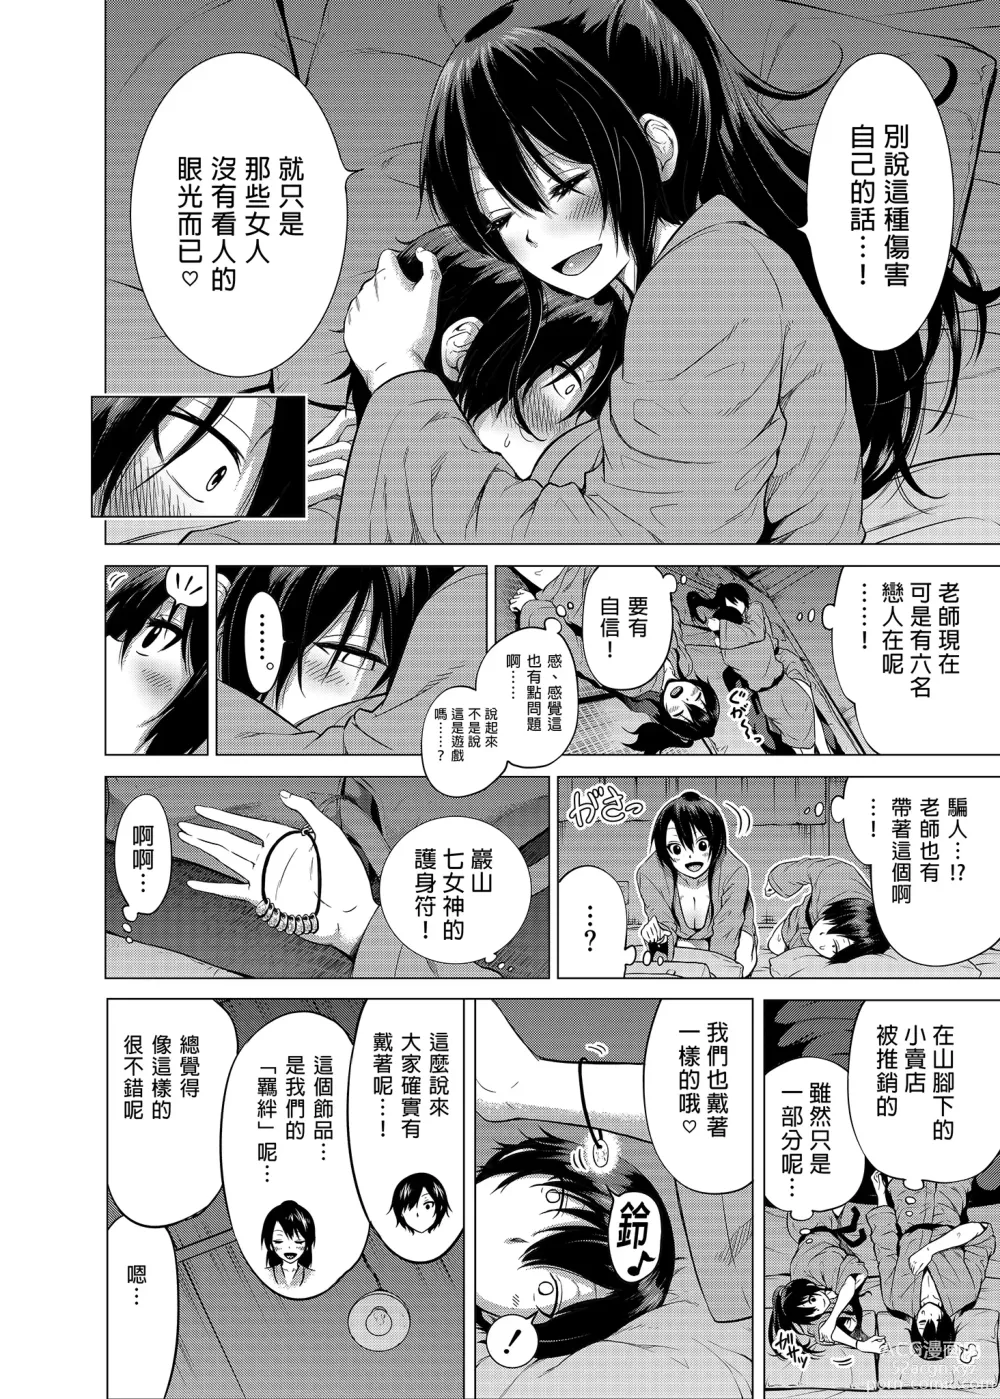 Page 56 of manga nanaka no rakuen2